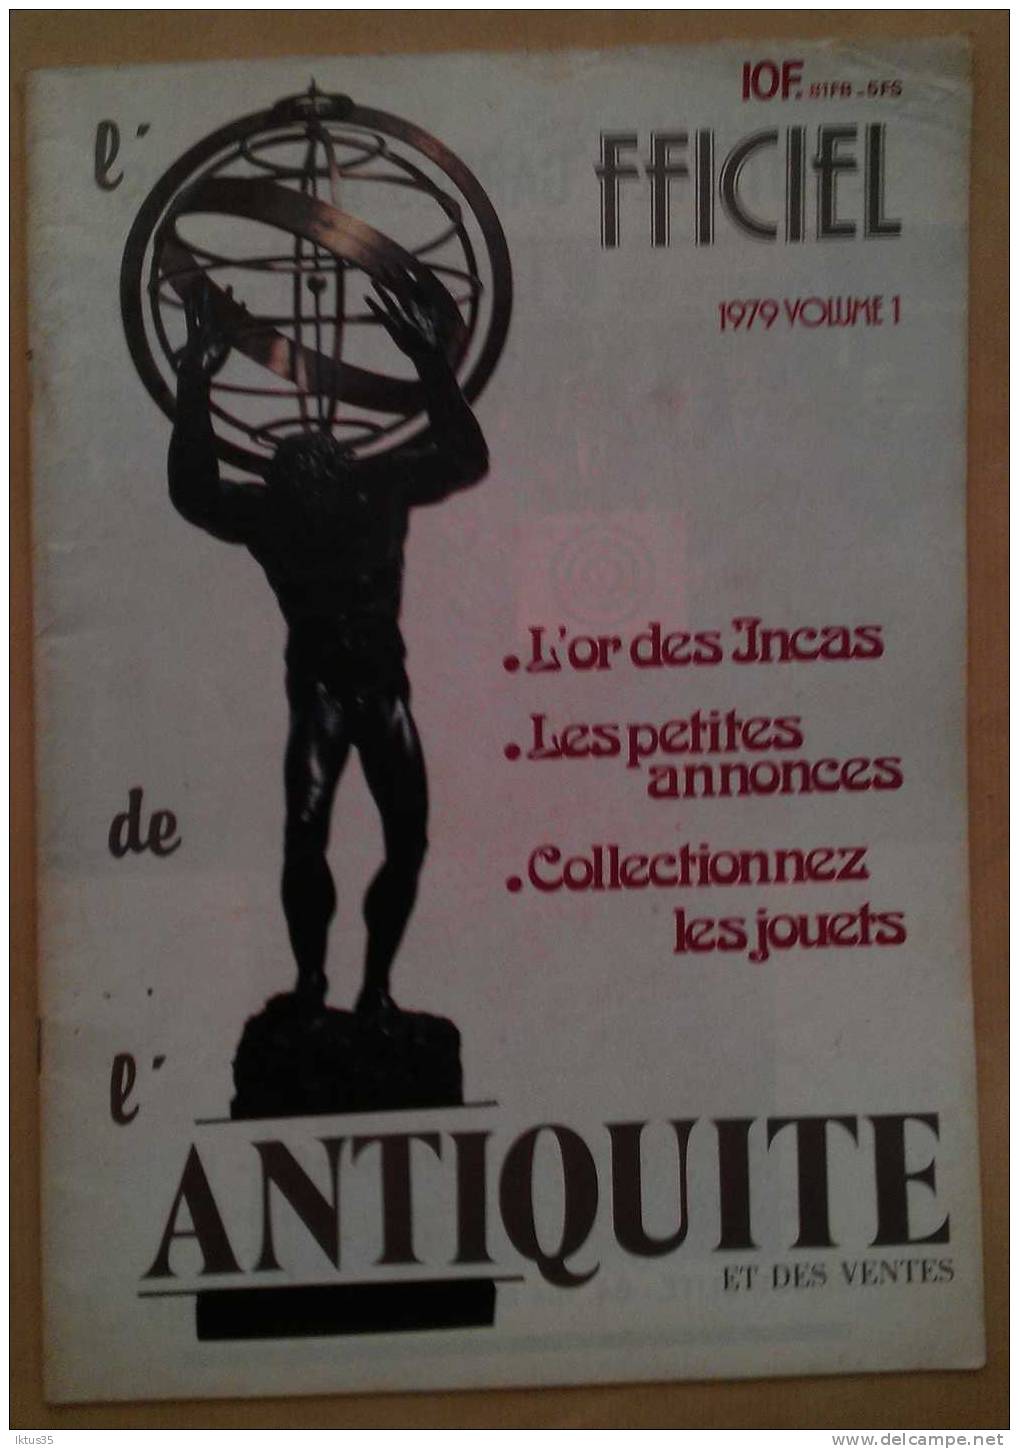 L'OFFICIEL DE L'ANTIQUITE ET DES VENTES-REVUE N°1 DE 1979-ART PATE DE VERRE-OR DES INCAS - Collectors